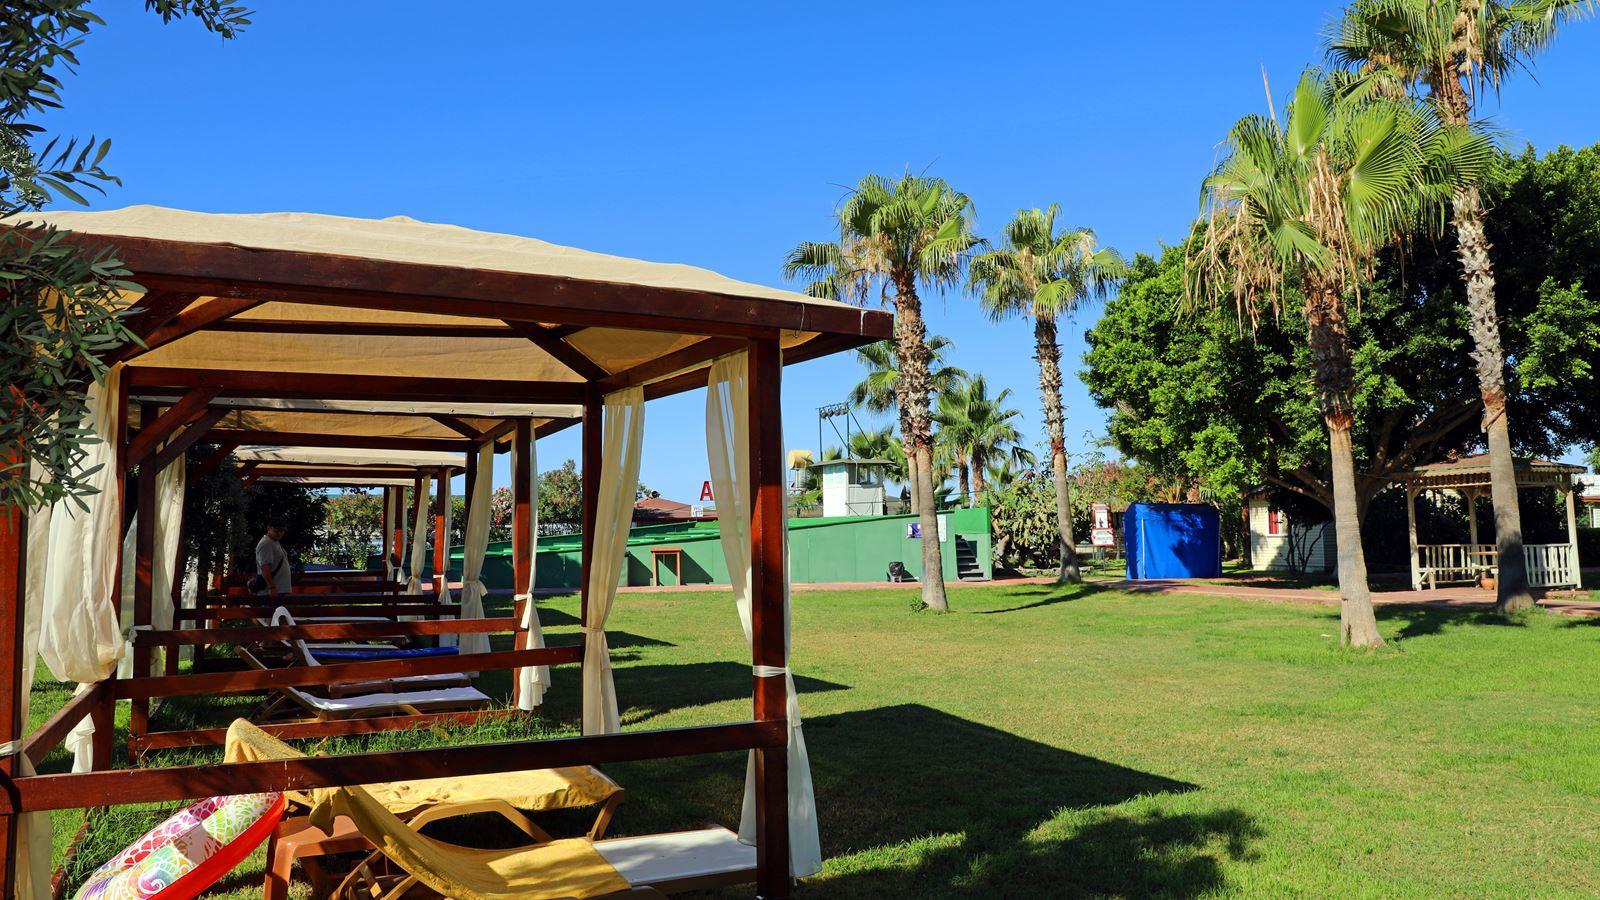 Caretta Beach Hotel 4*